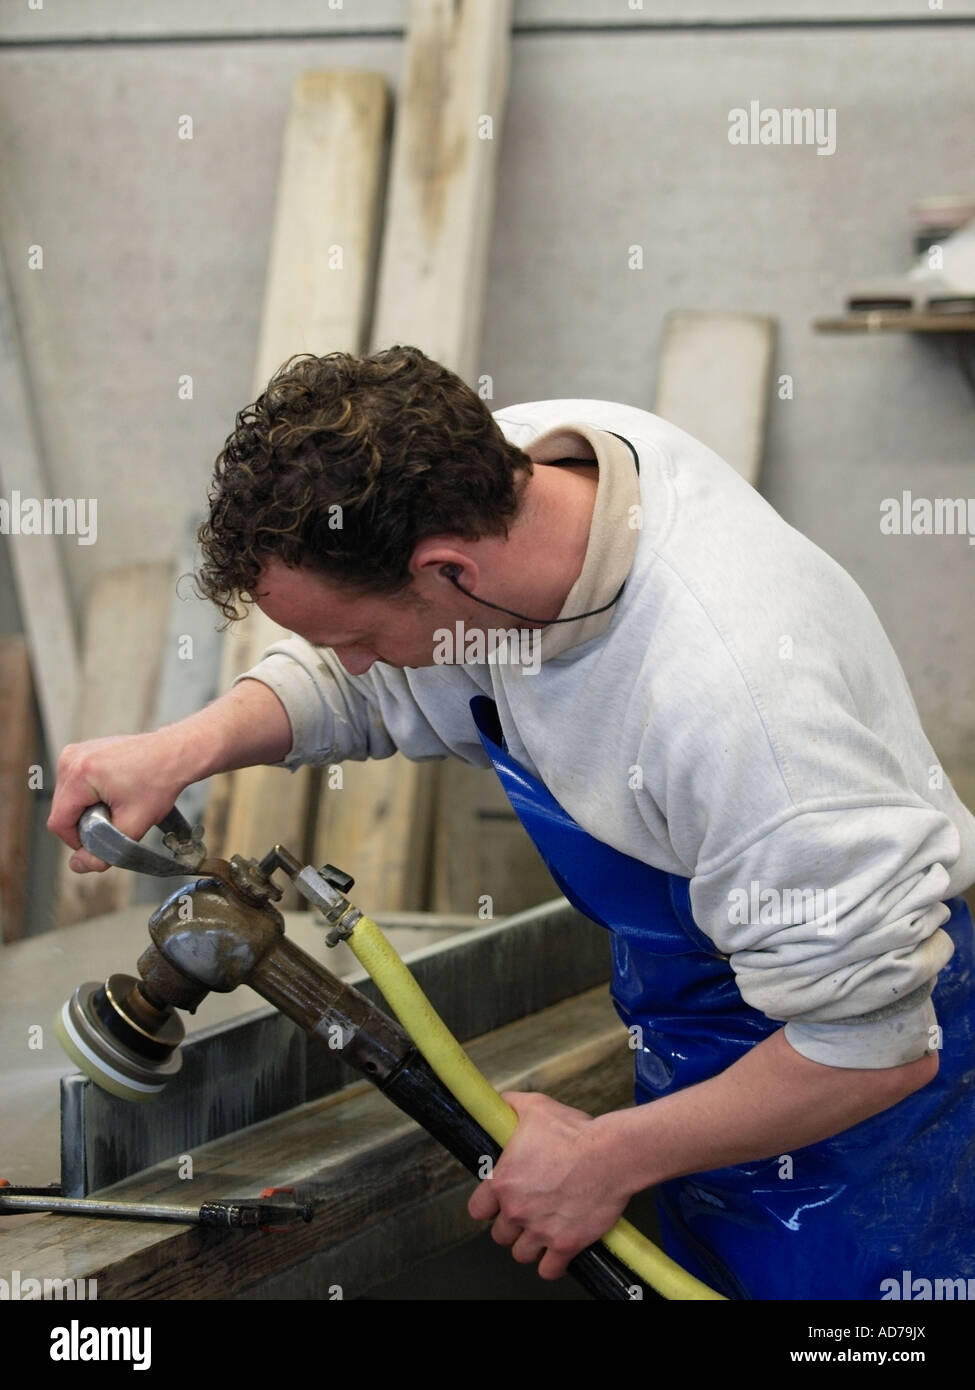 Polissage homme arrondir les bords d'une plaque de marbre qui sera utilisée sur un marbre ou une cuisine Breda Pays-Bas Banque D'Images